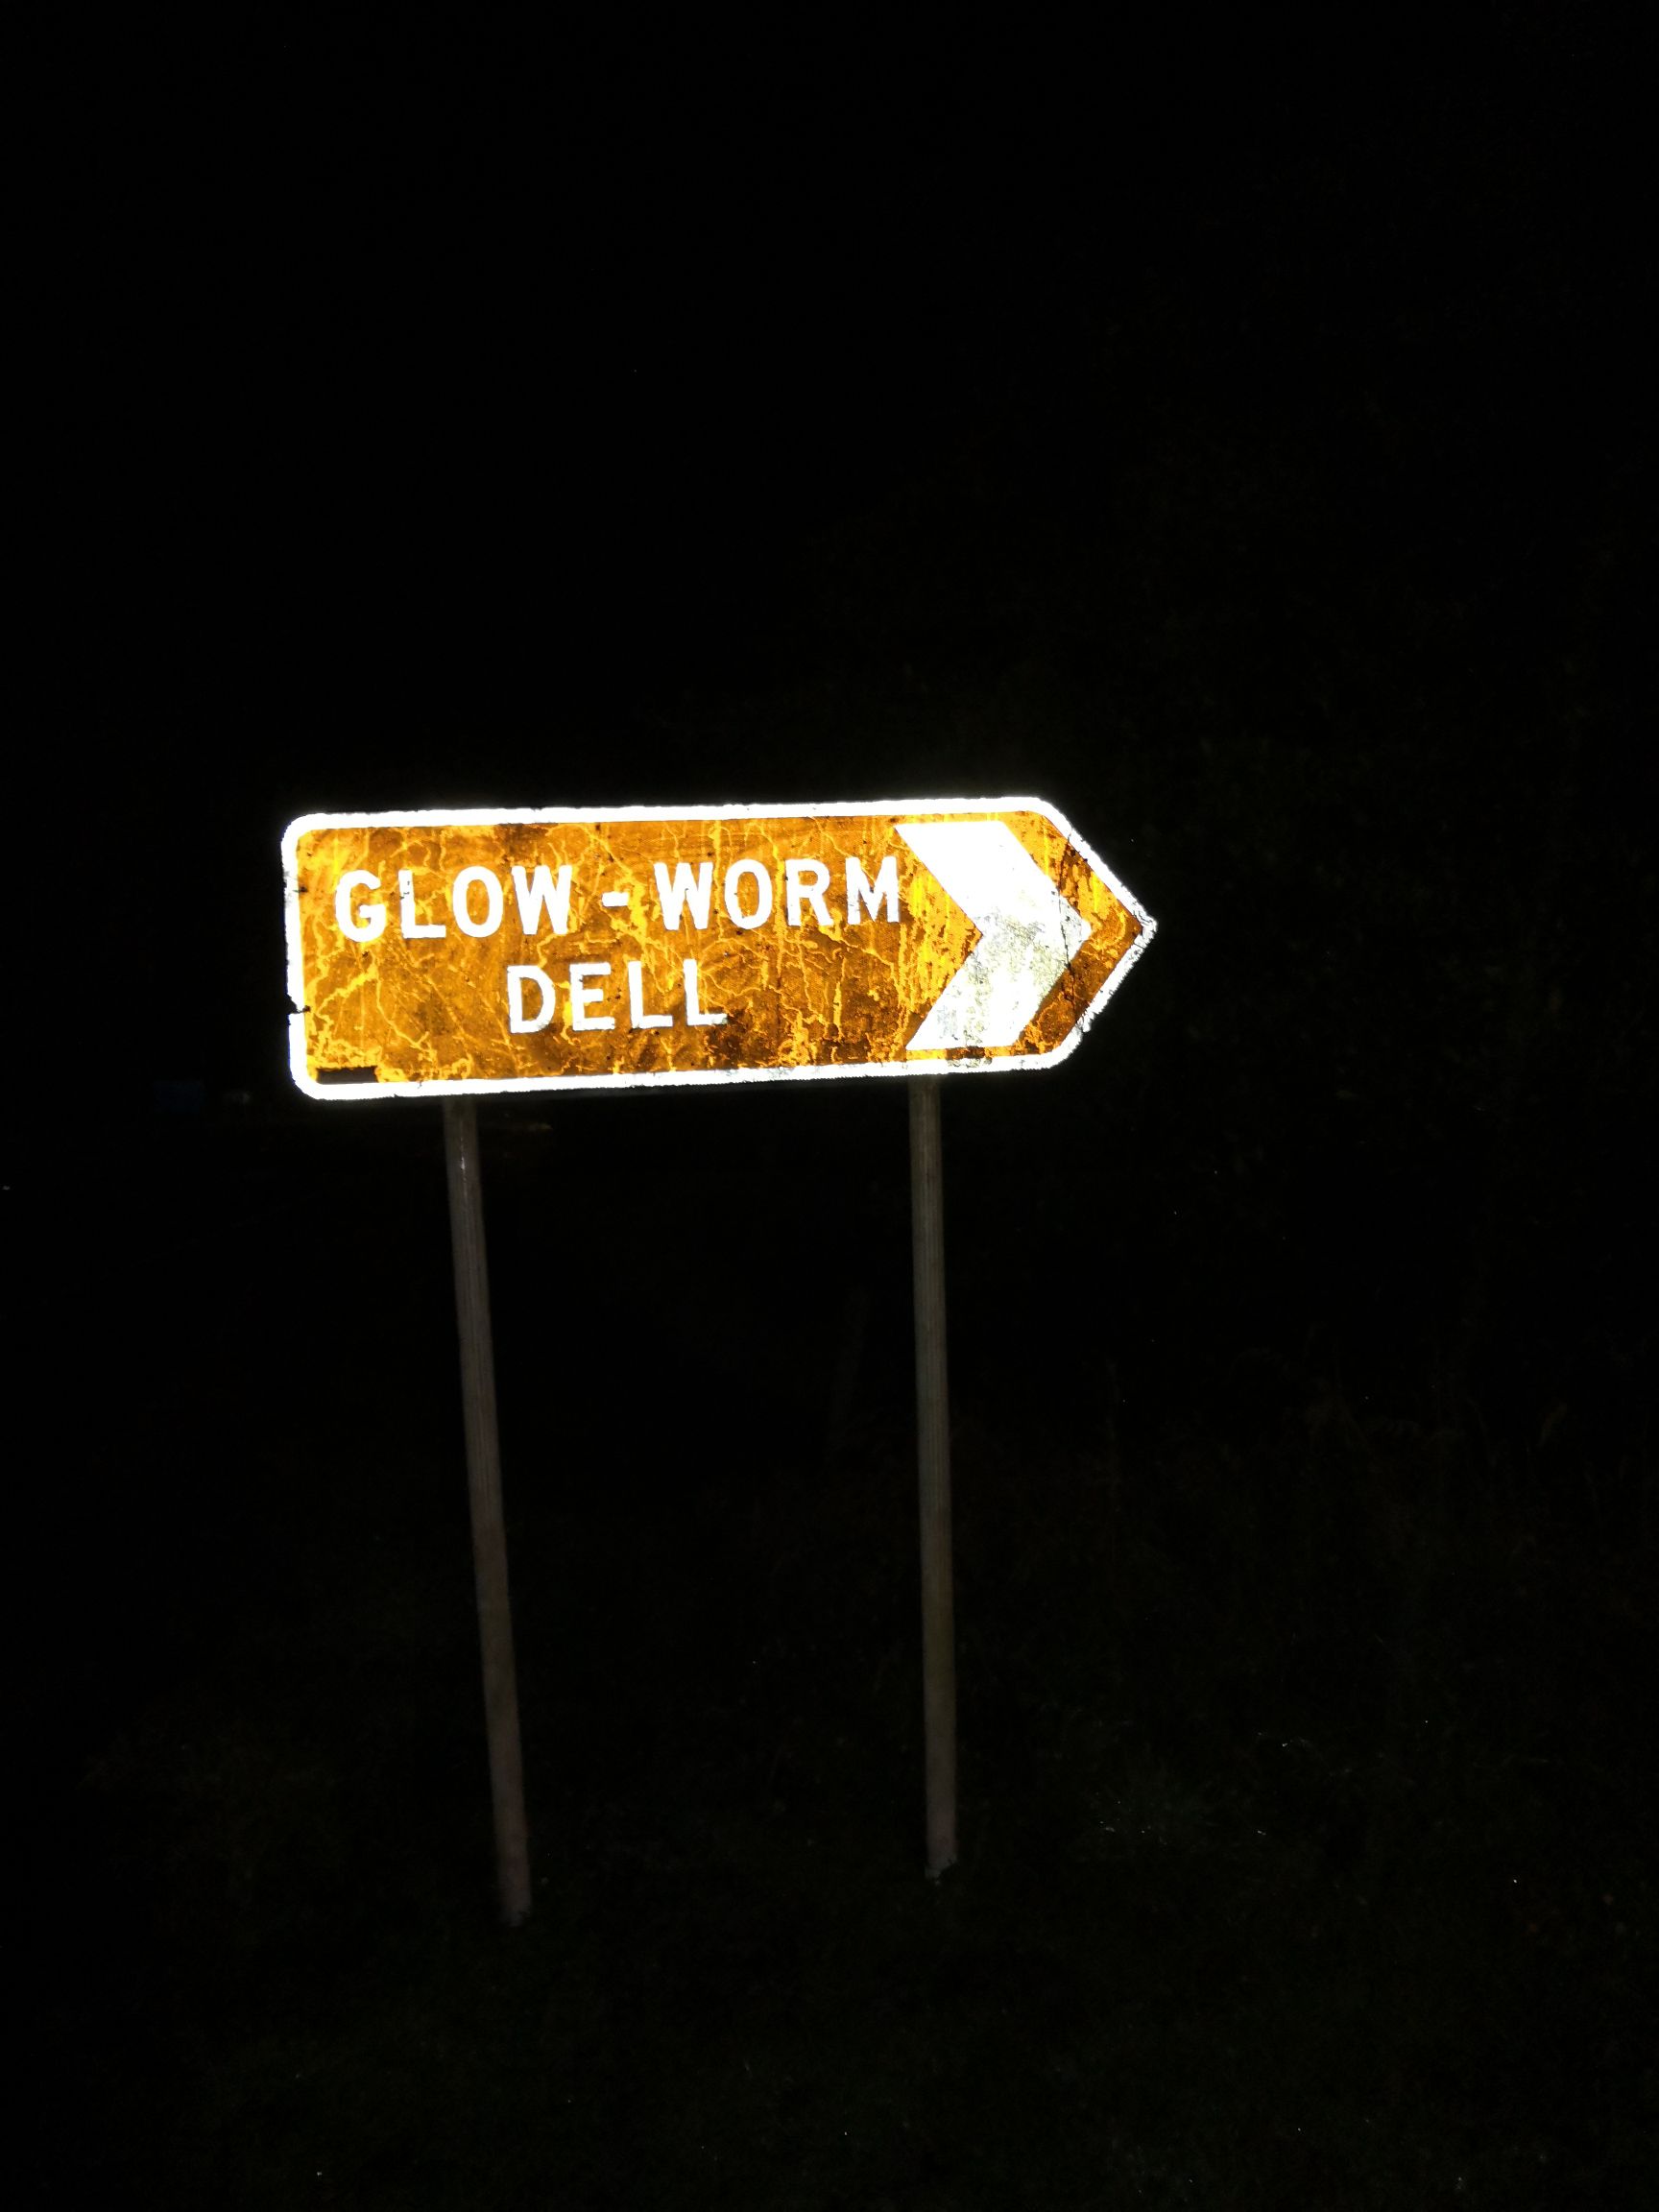 霍基蒂卡萤火虫洞是在路边的一个小山坡上，路边有免费停车位，步行约2分钟即可见到闪闪发光的萤火虫，日间